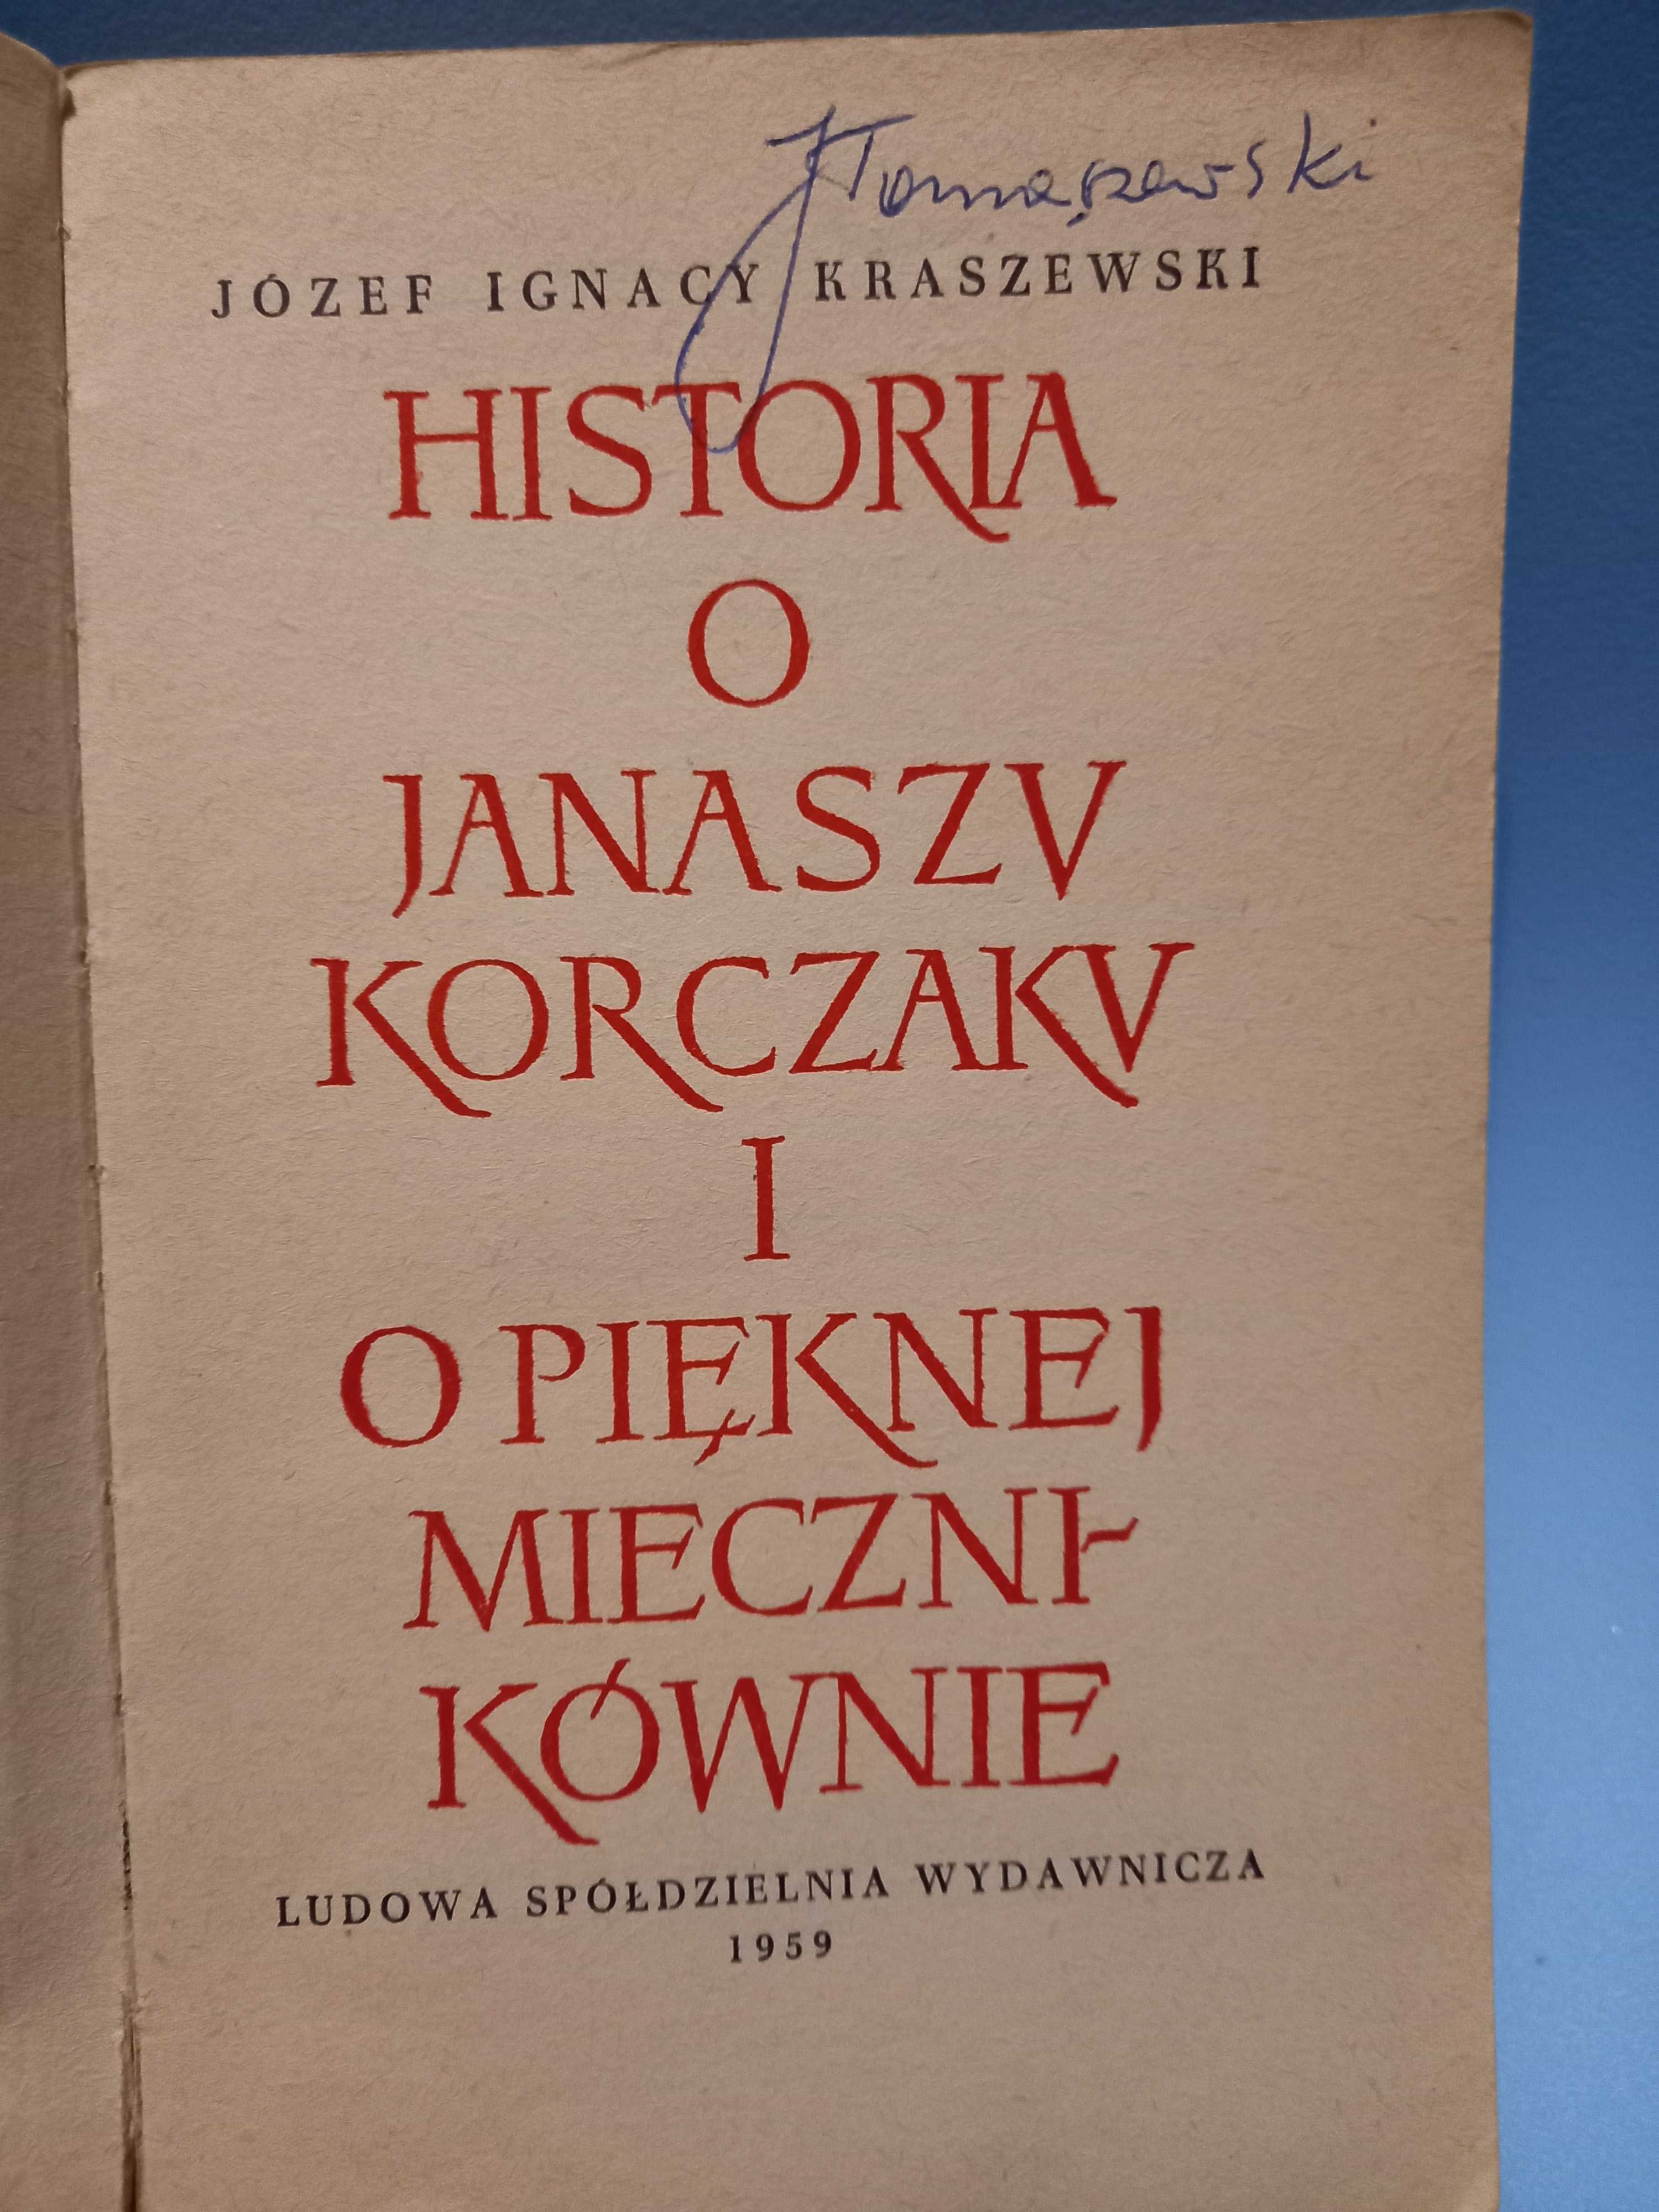 Józef Ignacy Kraszewski  3 powieści